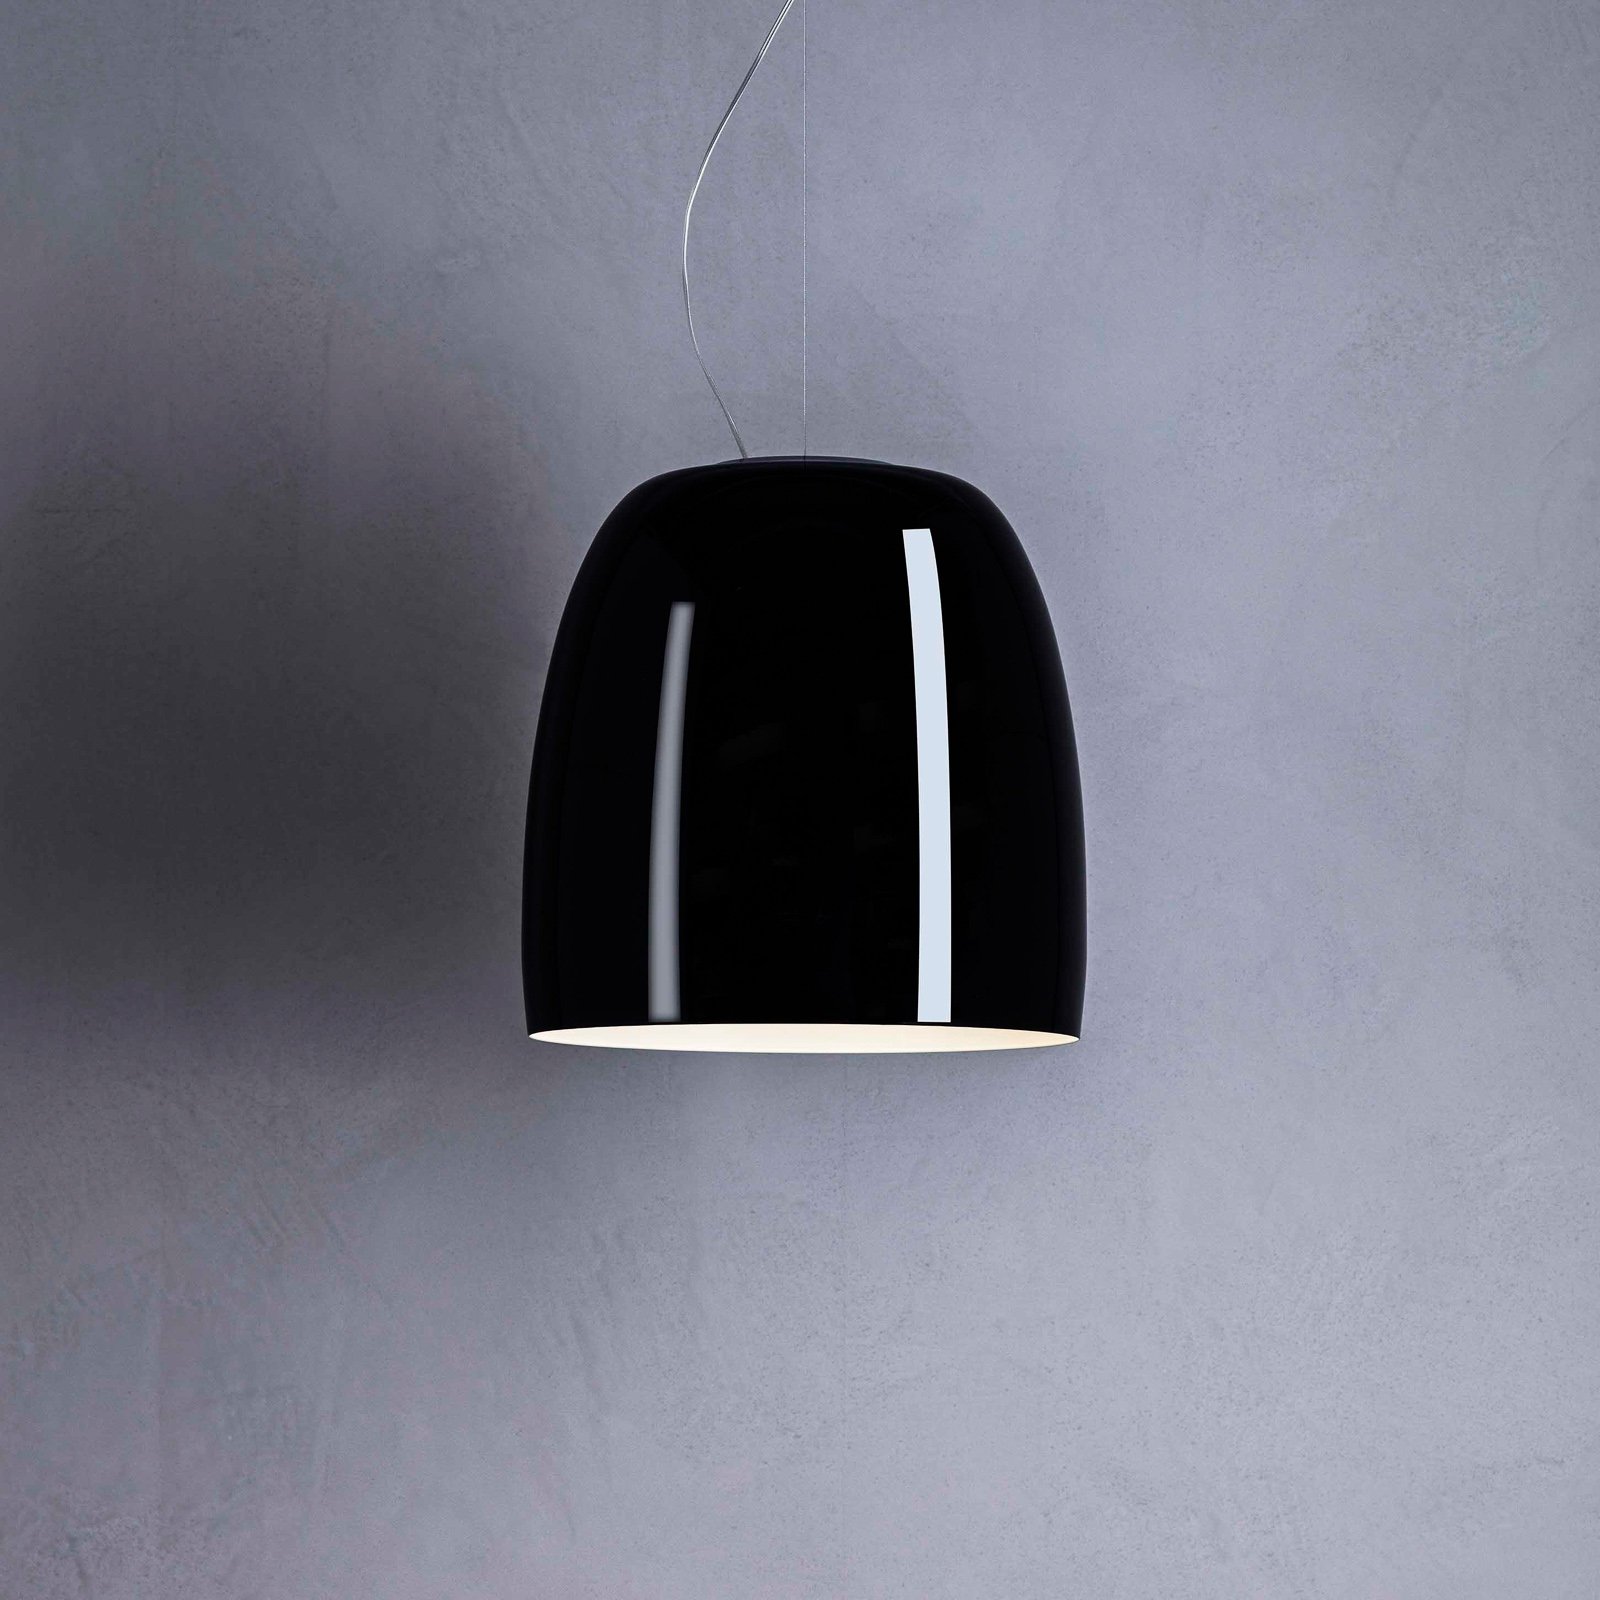 Prandina Notte S3 függő lámpa, fekete/fehér